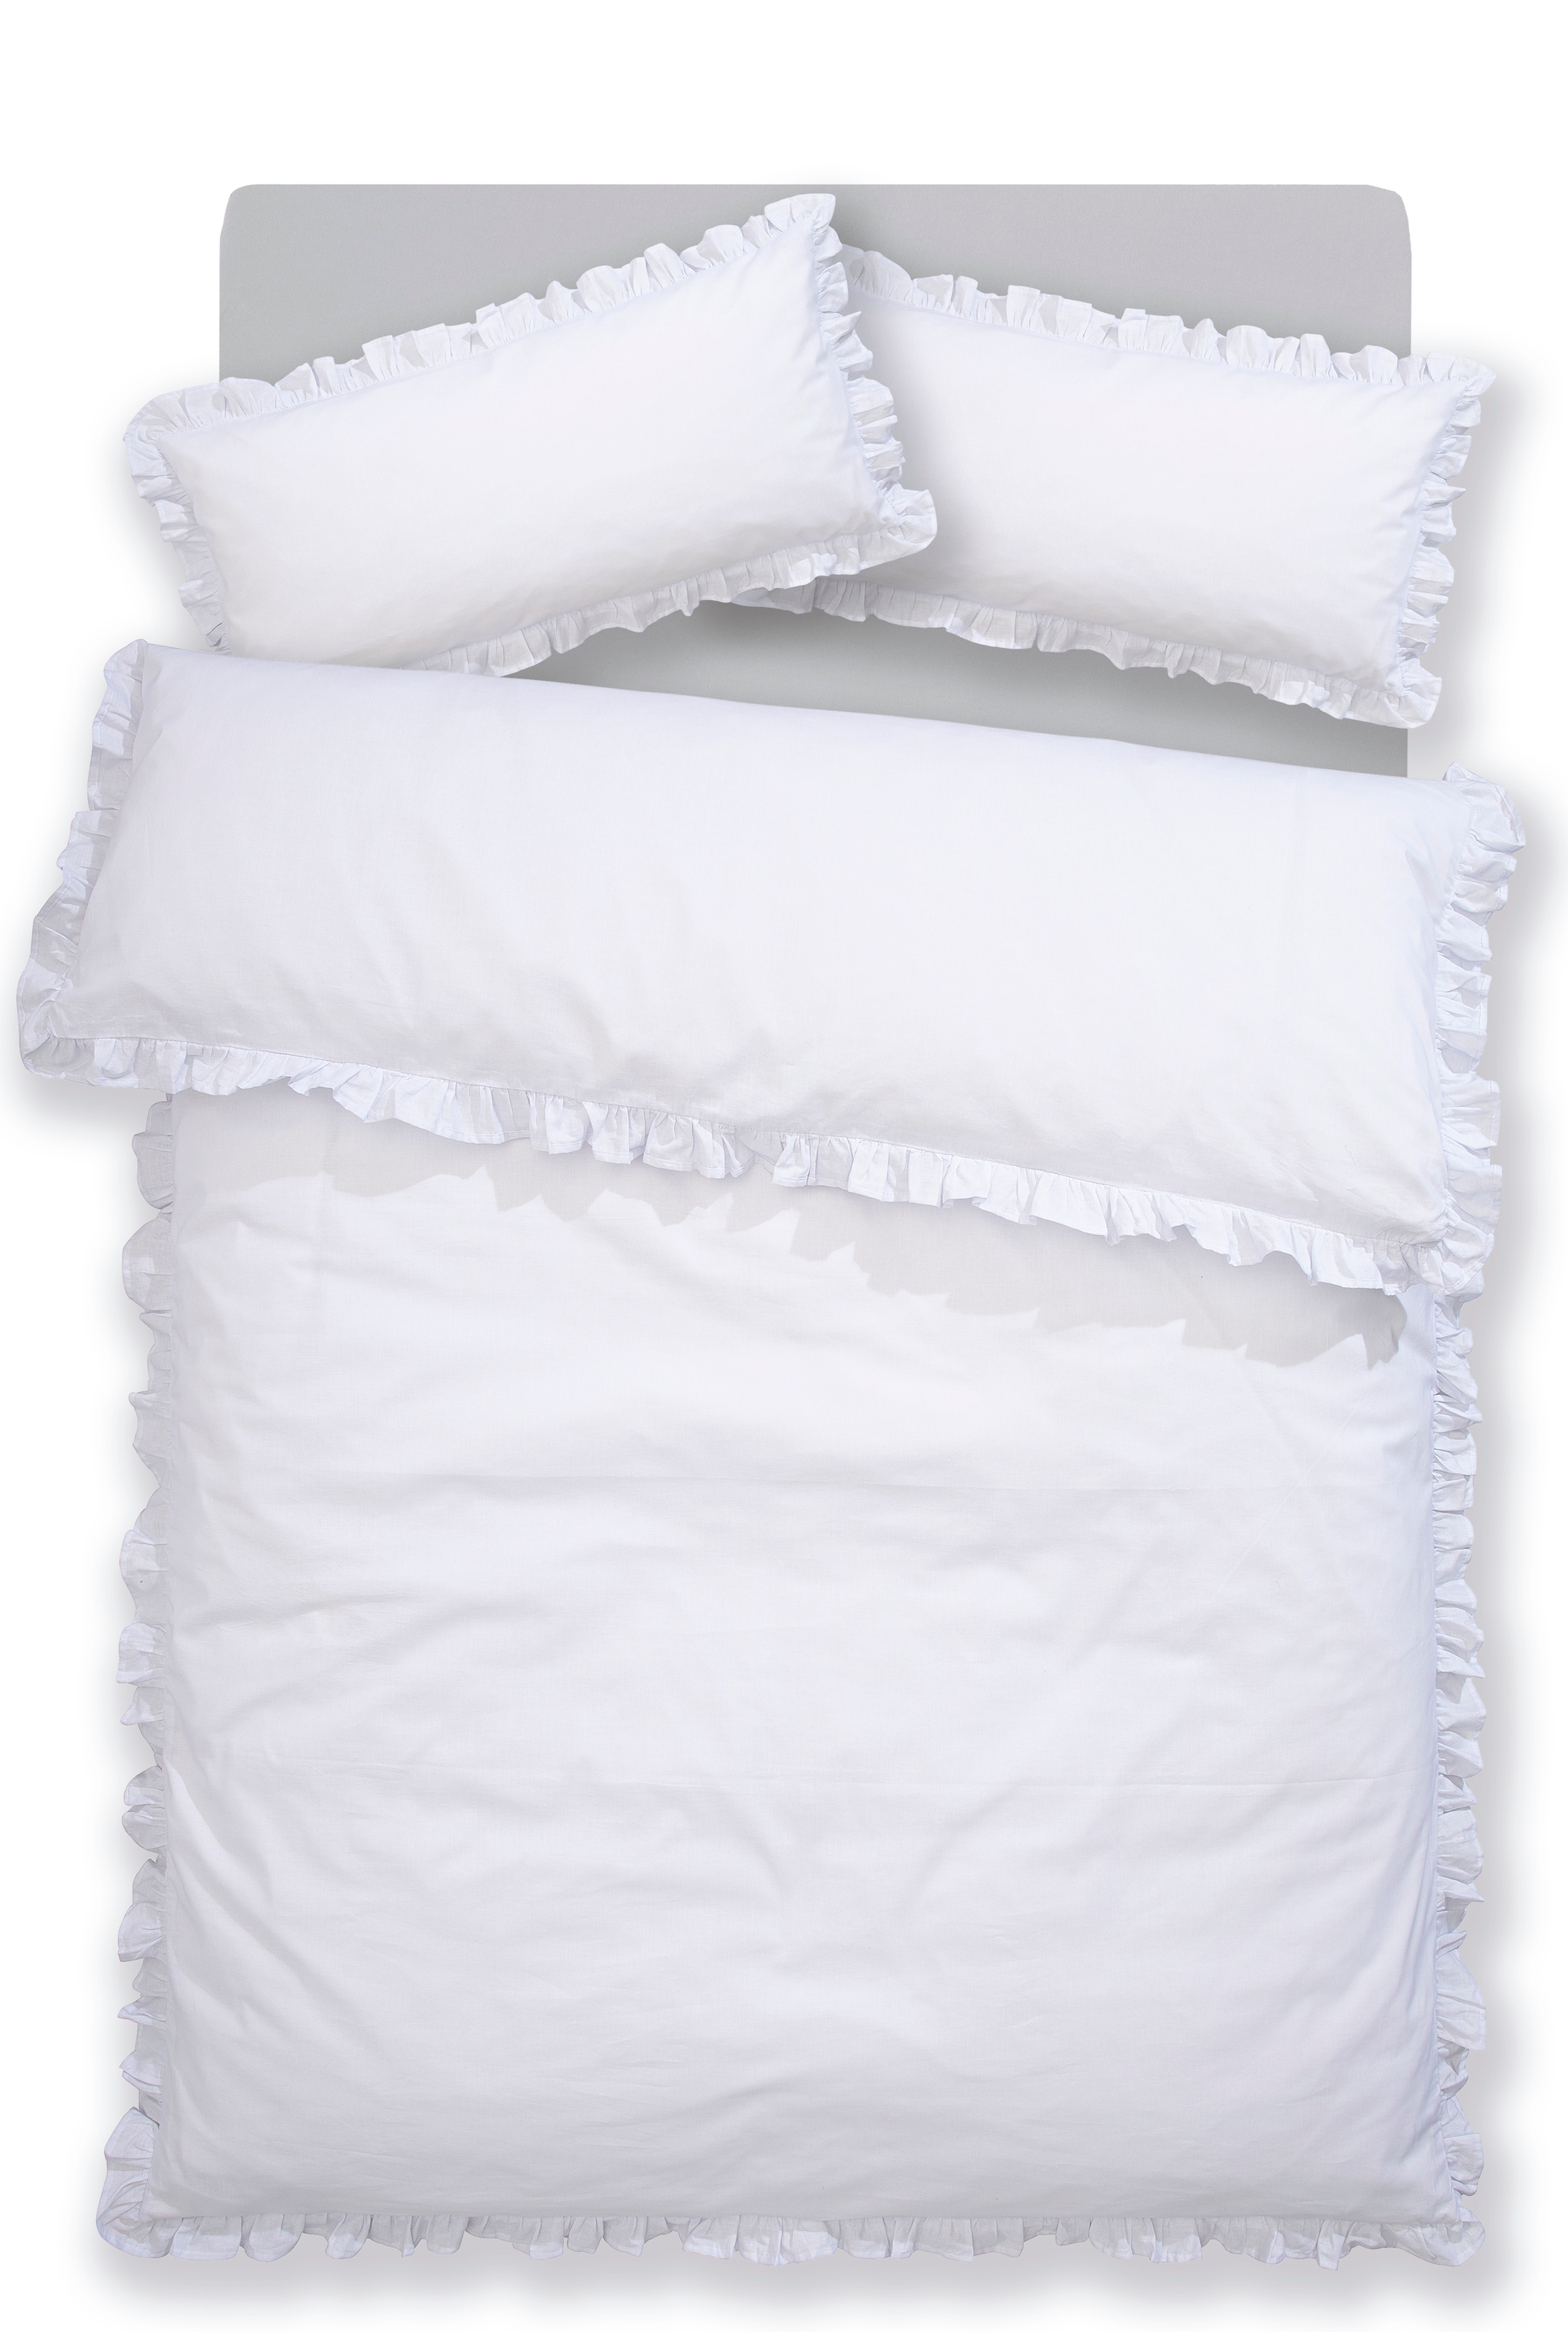 Home affaire Bettwäsche »Violetta in Gr. 135x200 oder 155x220 cm«, (2 tlg.), Bettwäsche aus Baumwolle, romantische Bettwäsche mit Volants